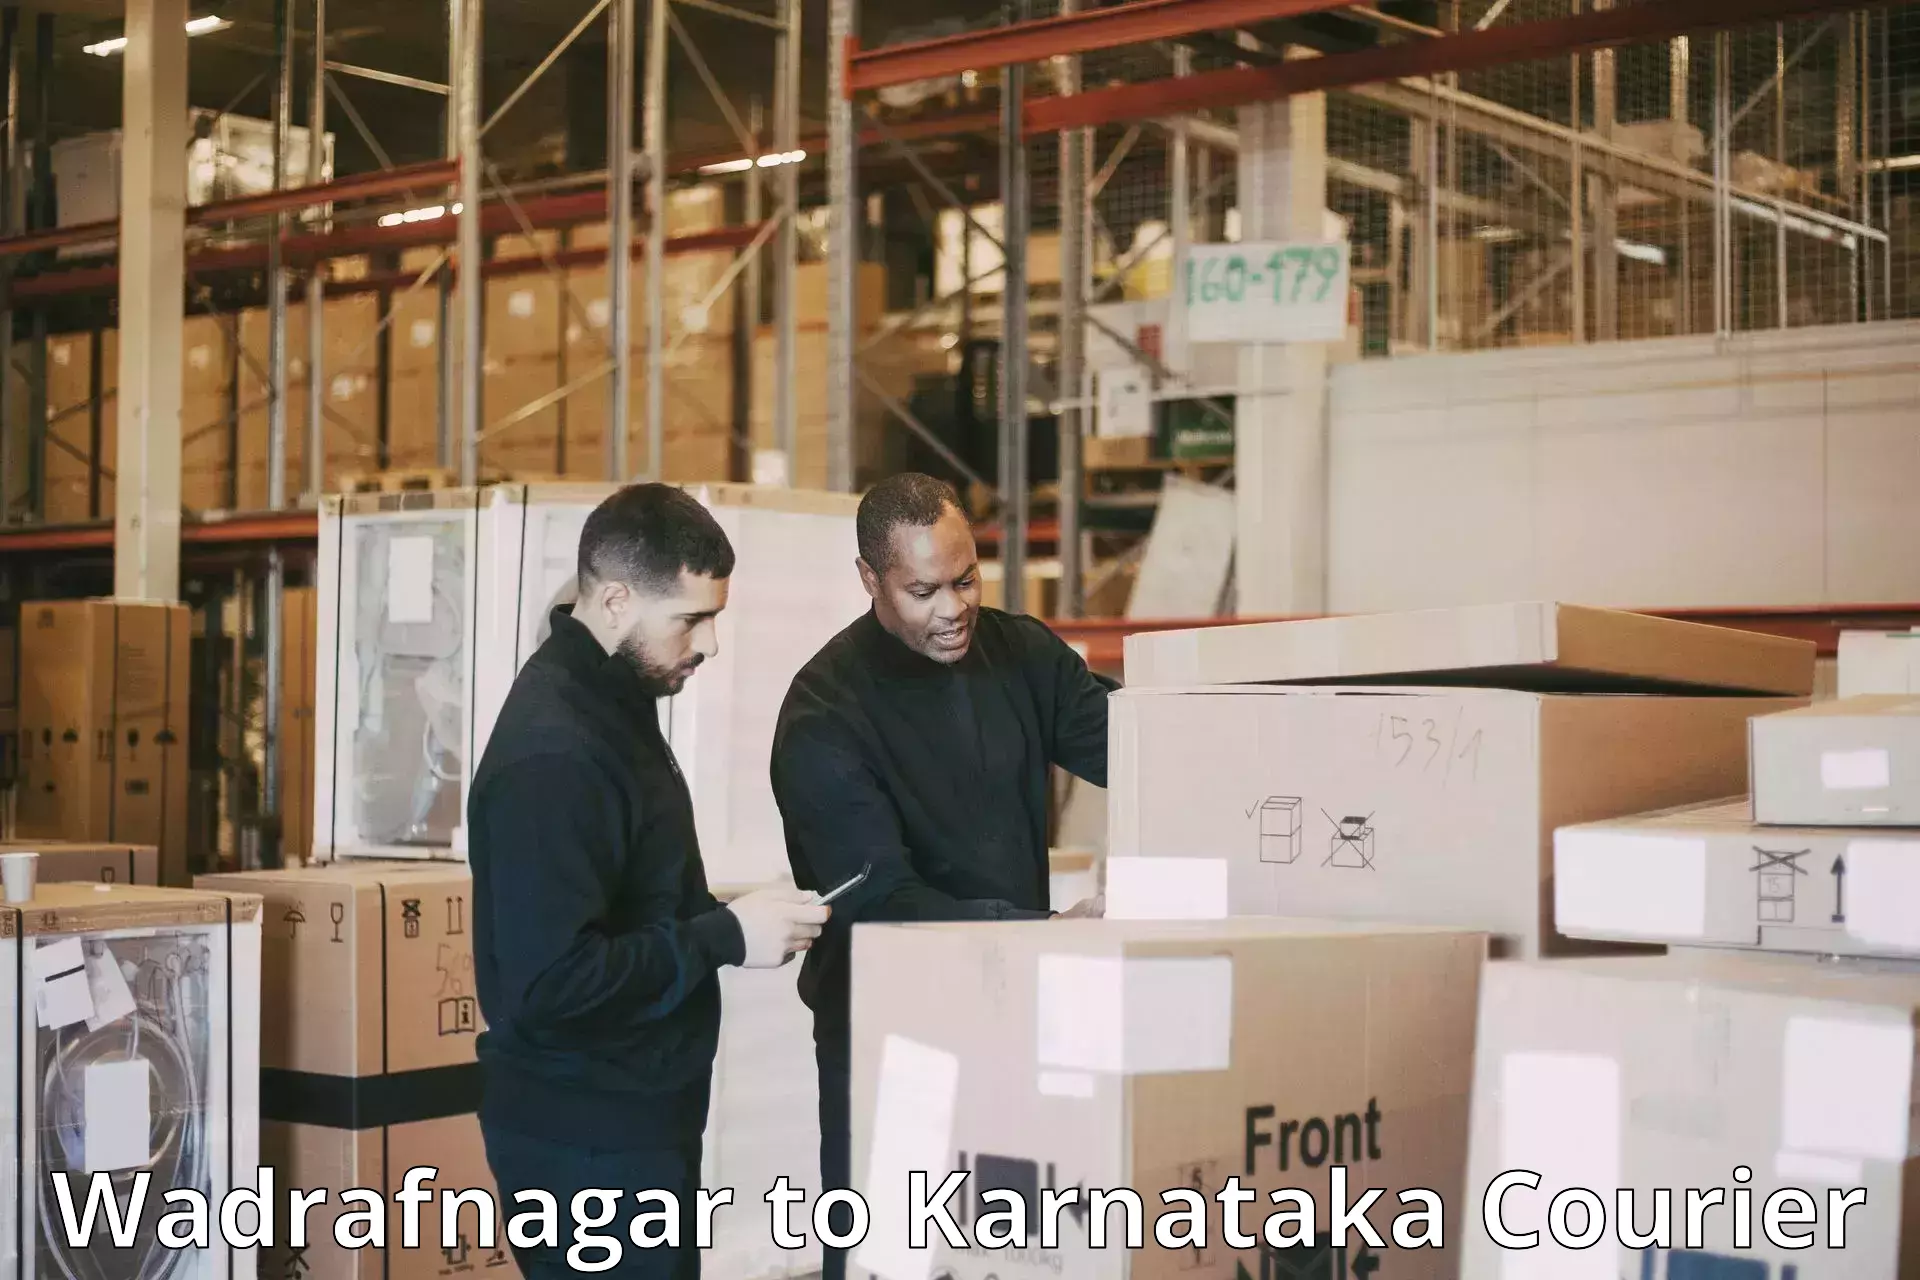 Professional parcel services Wadrafnagar to Mangalore Port